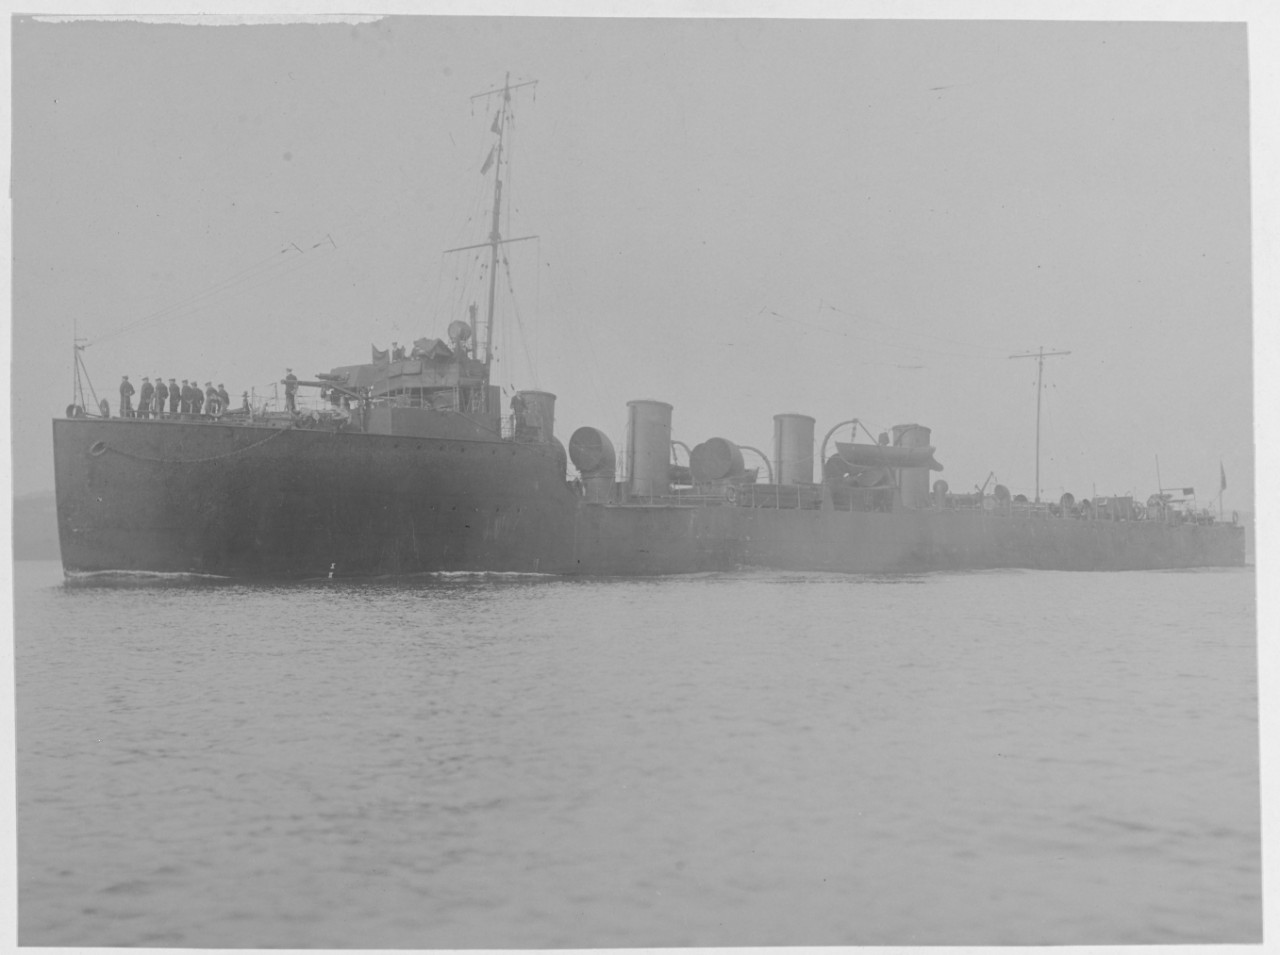 HMS AMAZON (British destroyer, 1908)